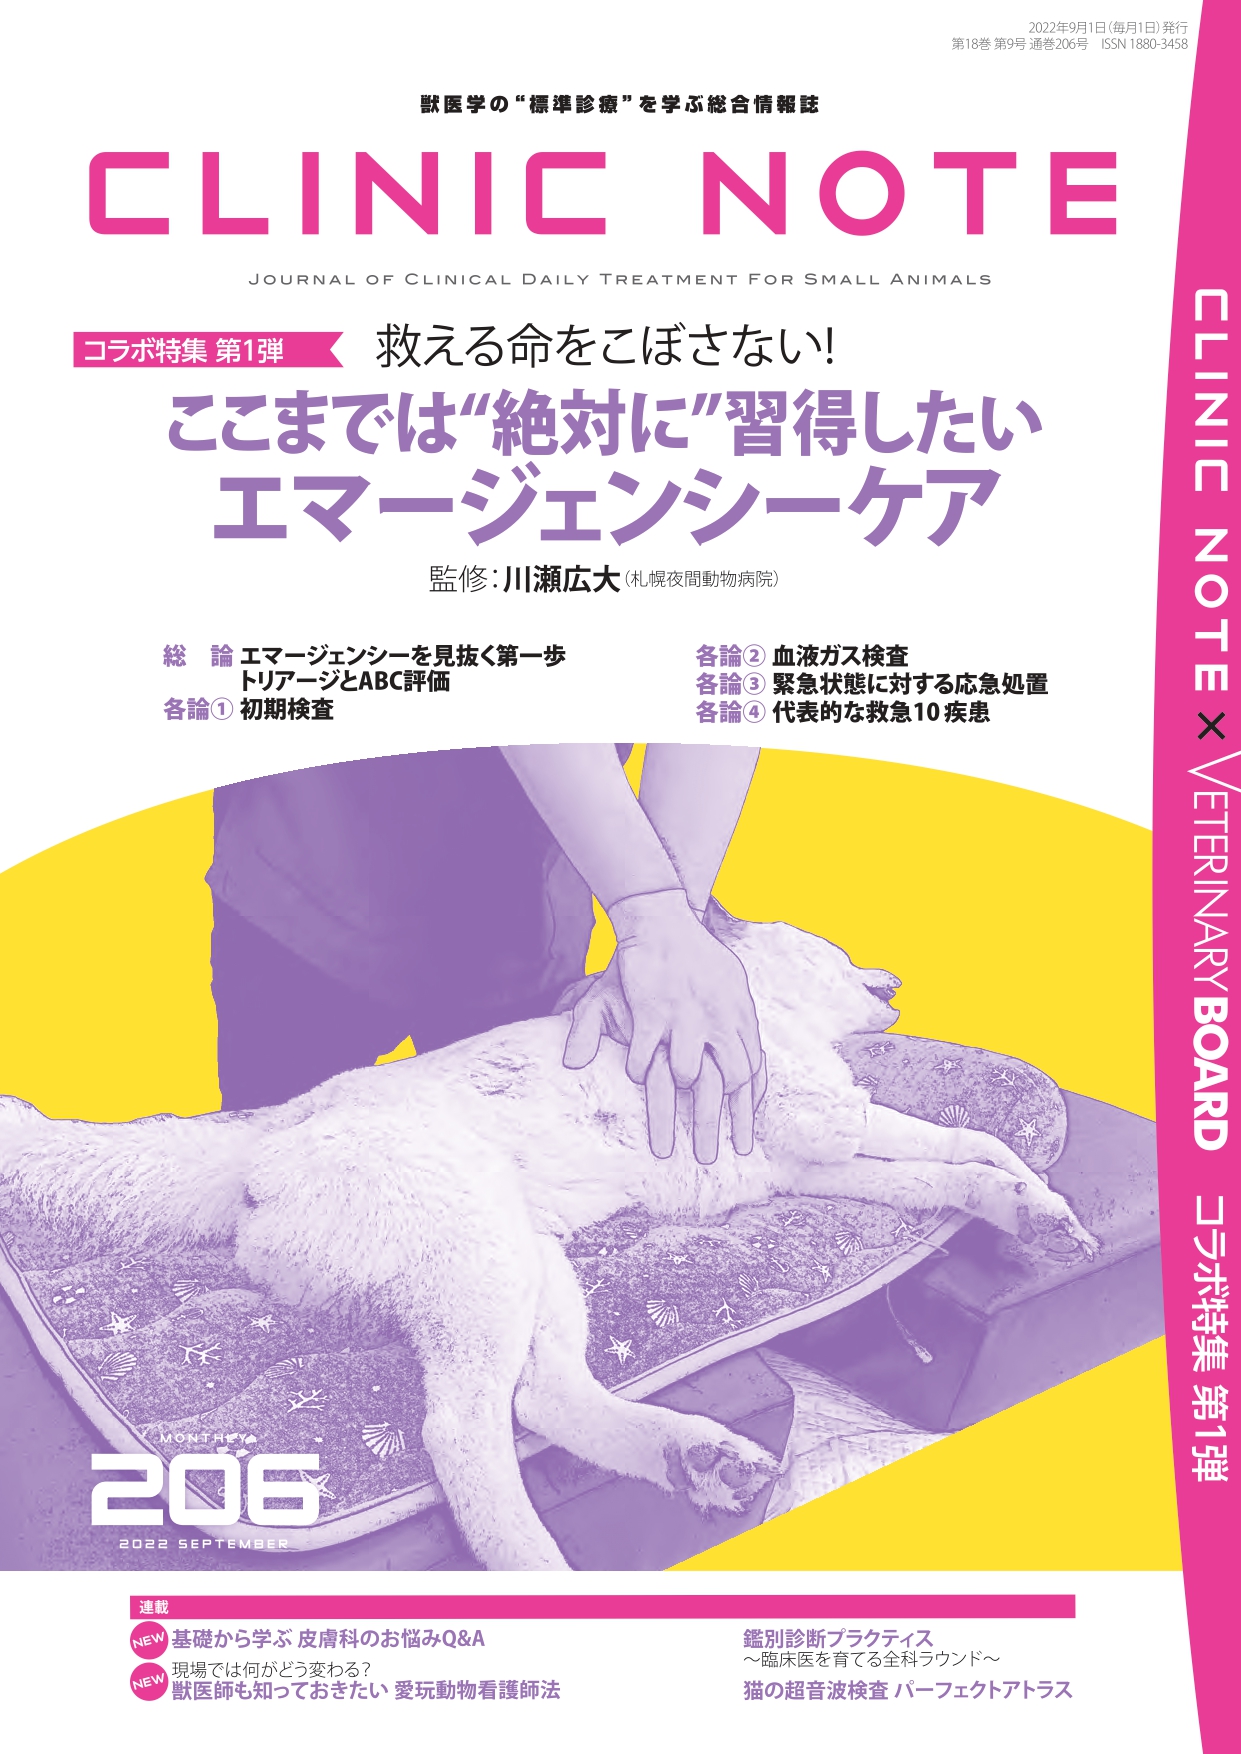 公式オンラインストア 7月1日発売の川瀬先生の犬と猫の 